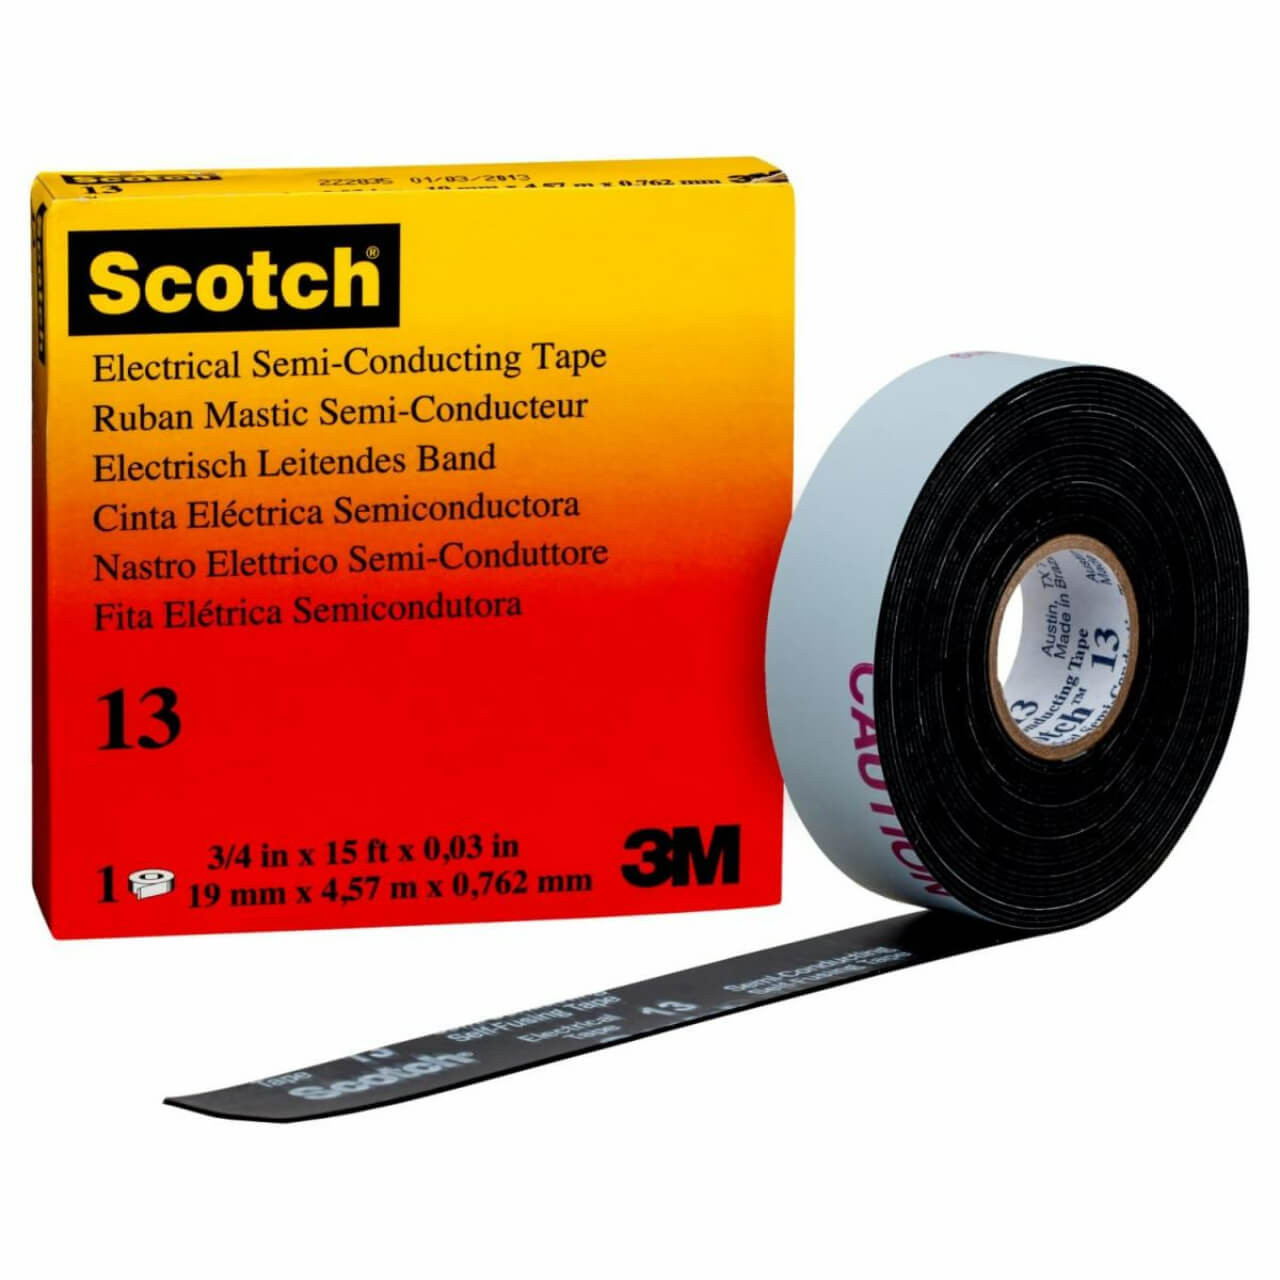 3M Scotch Semiconducting Tape